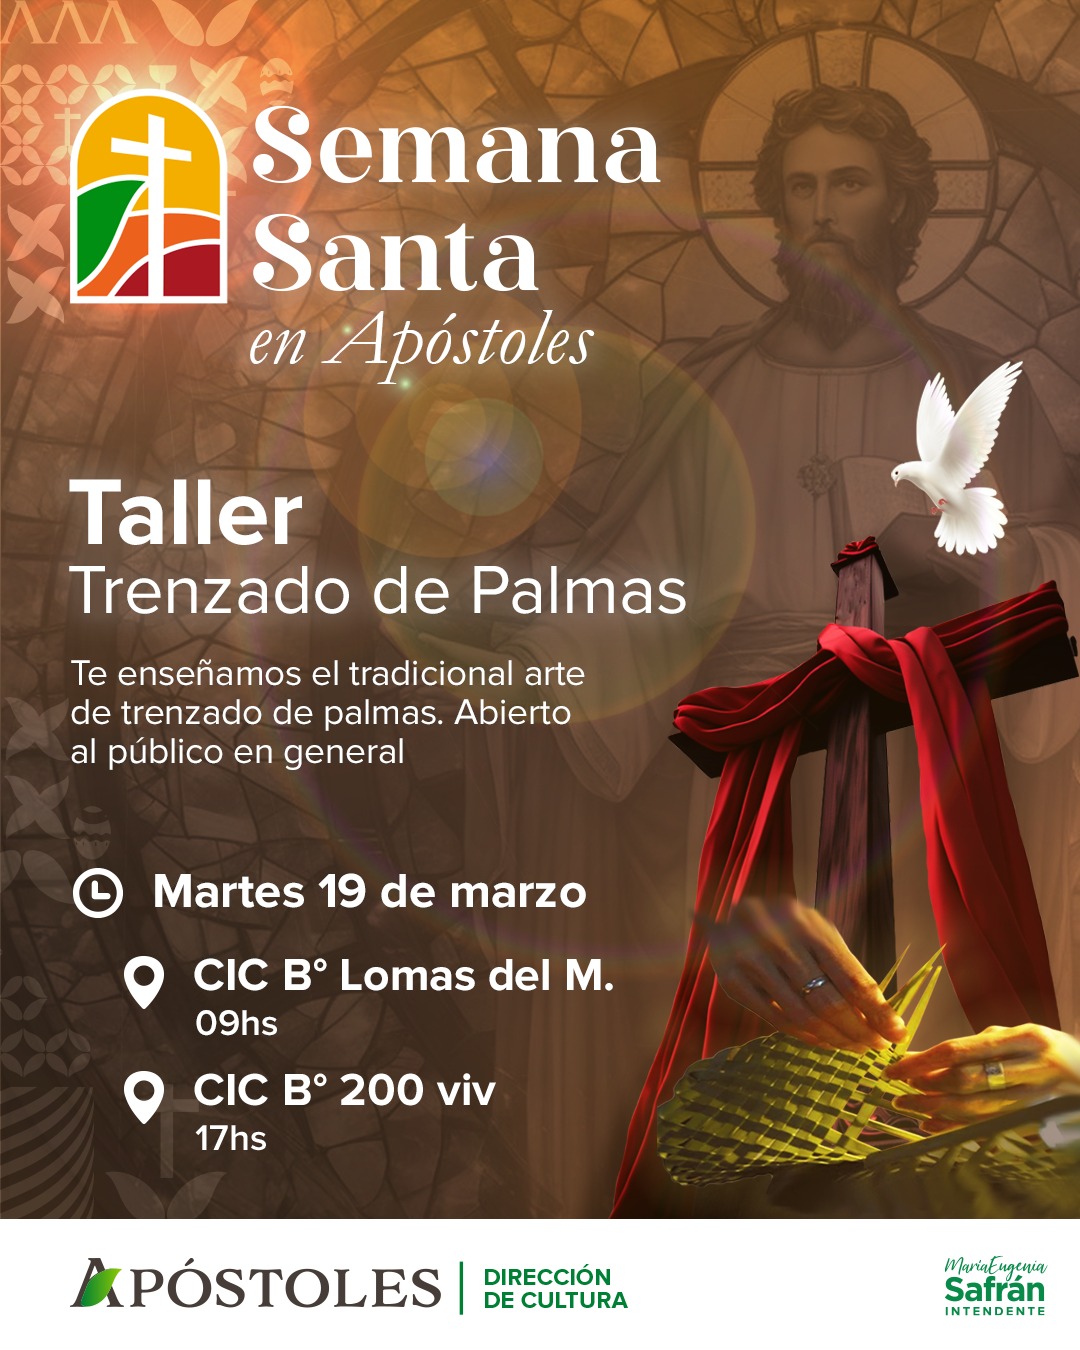 Semana Santa en Apóstoles: taller de trenzado de palmas en diferentes puntos de la ciudad imagen-11